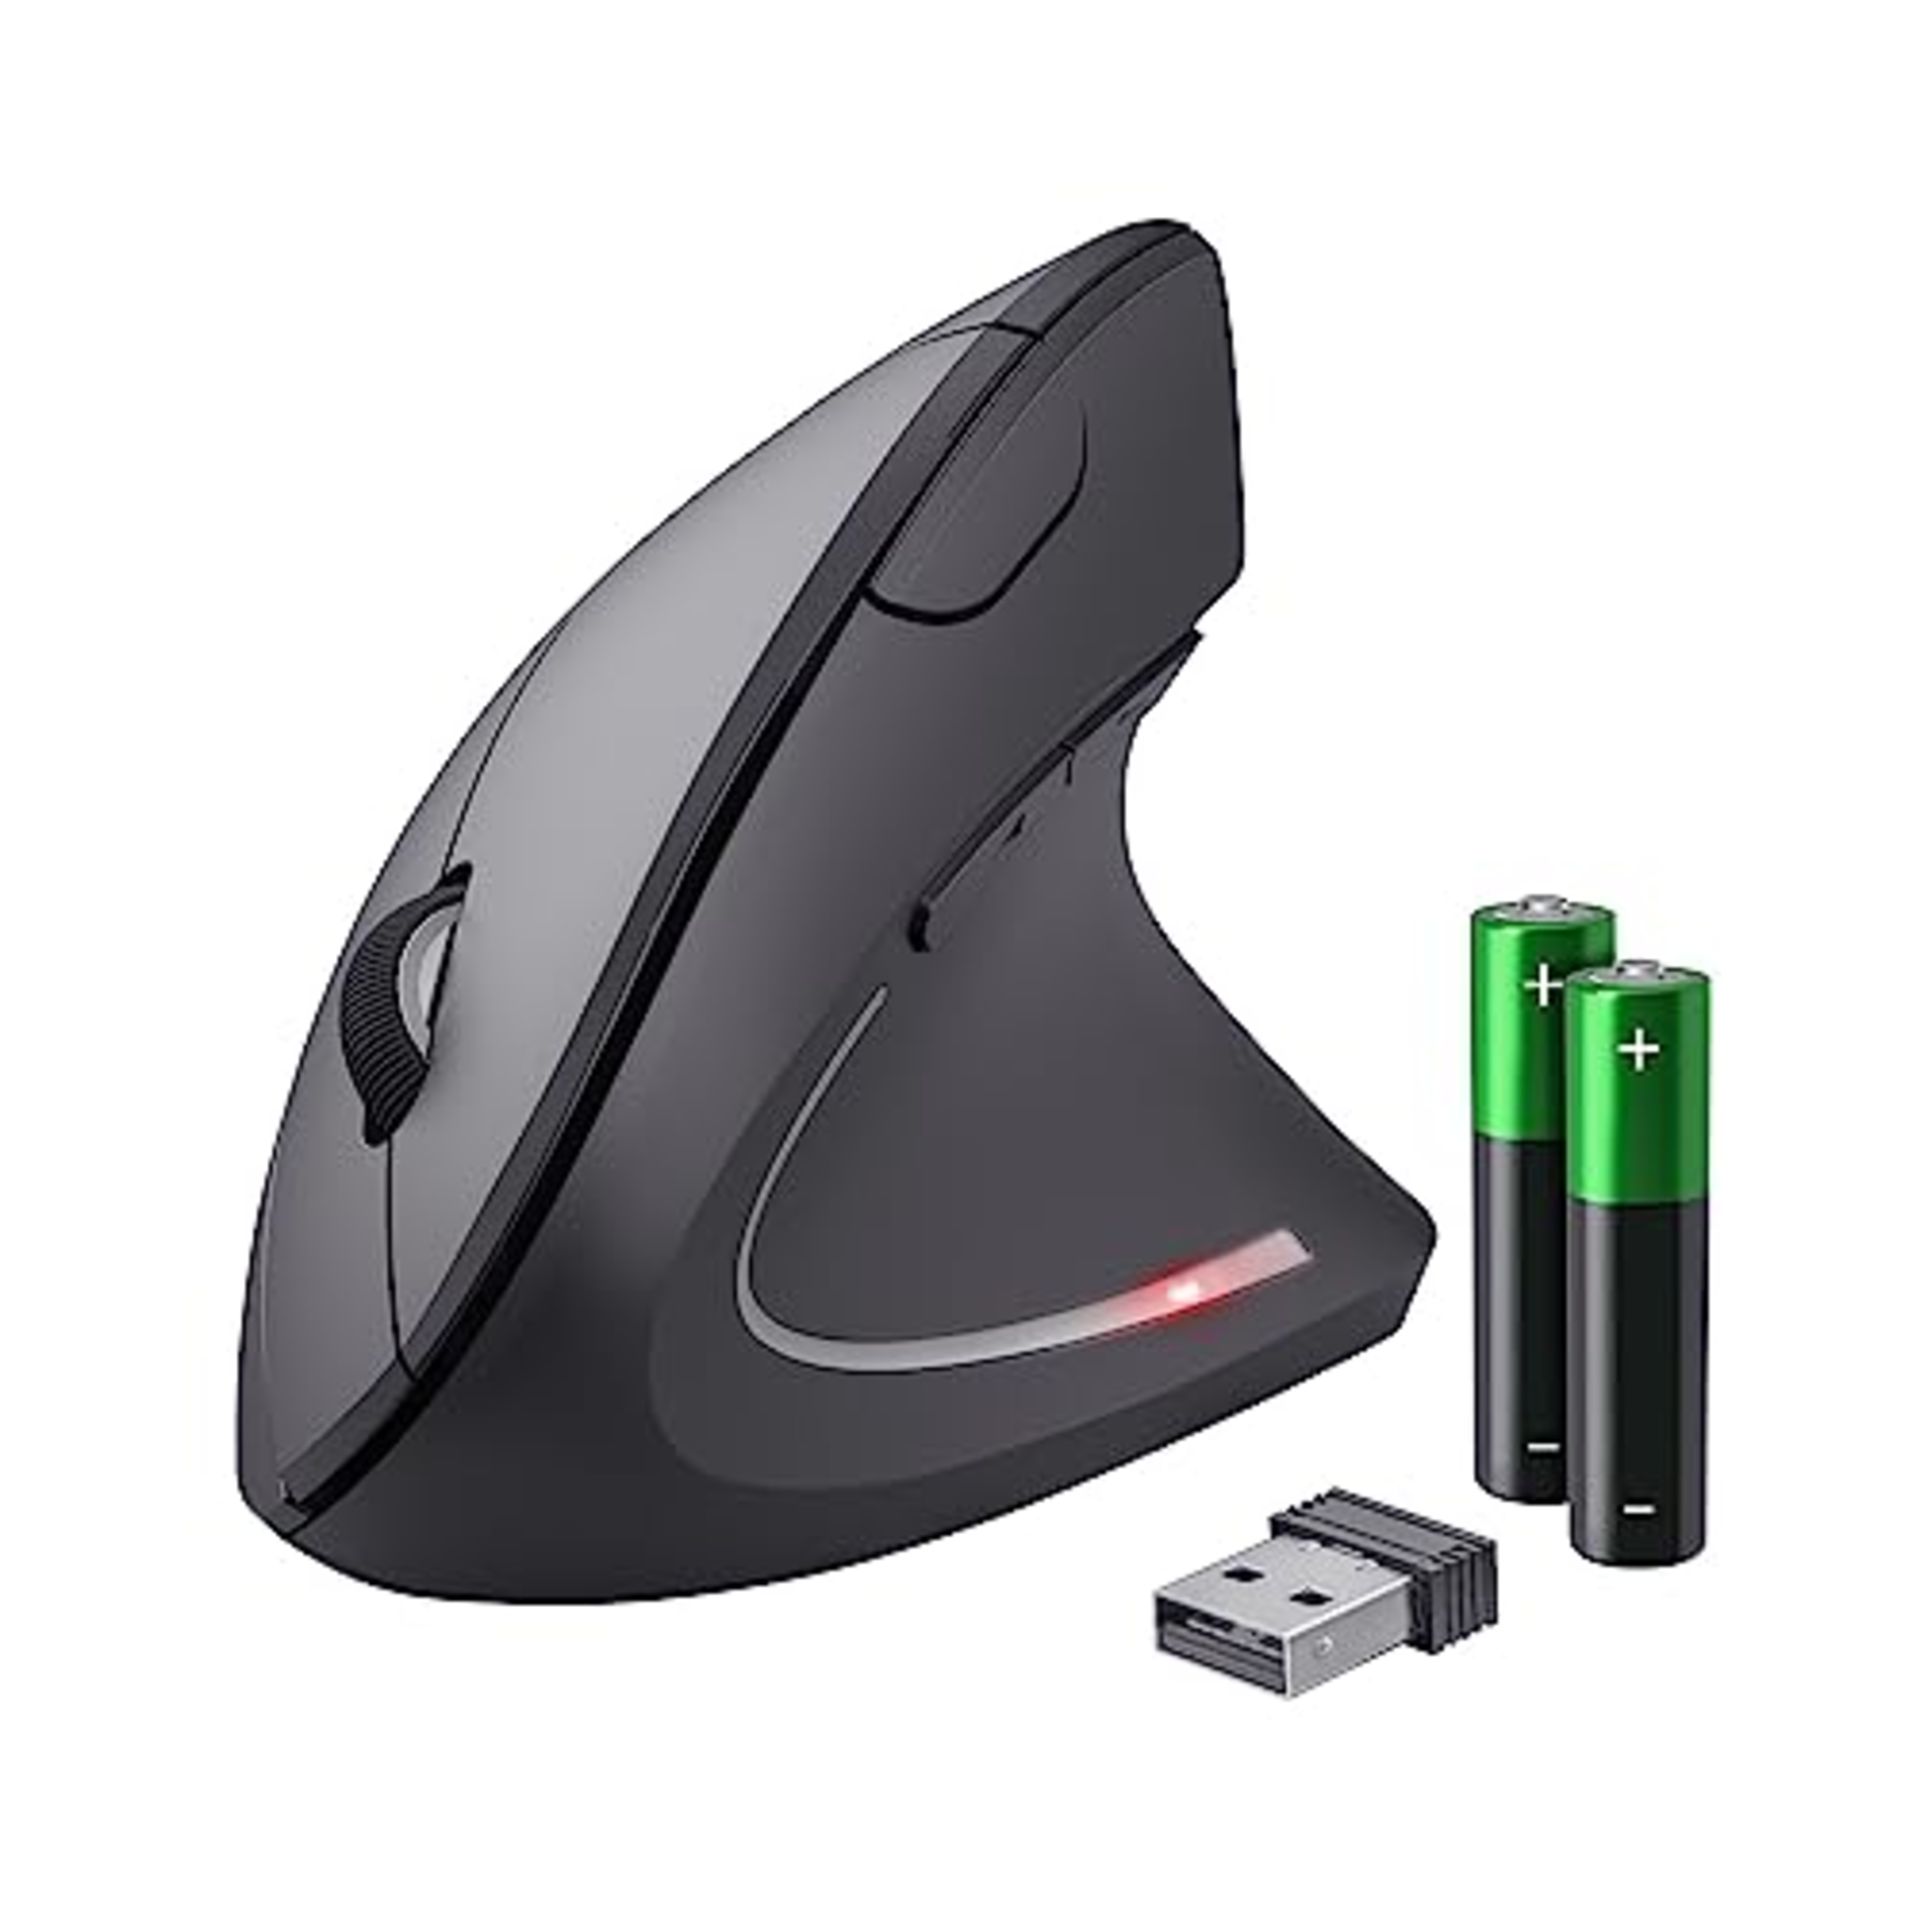 Trust Verto Mouse Verticale Wireless, Mouse Ergonomico senza Filo, 800/1200/1600 DPI,